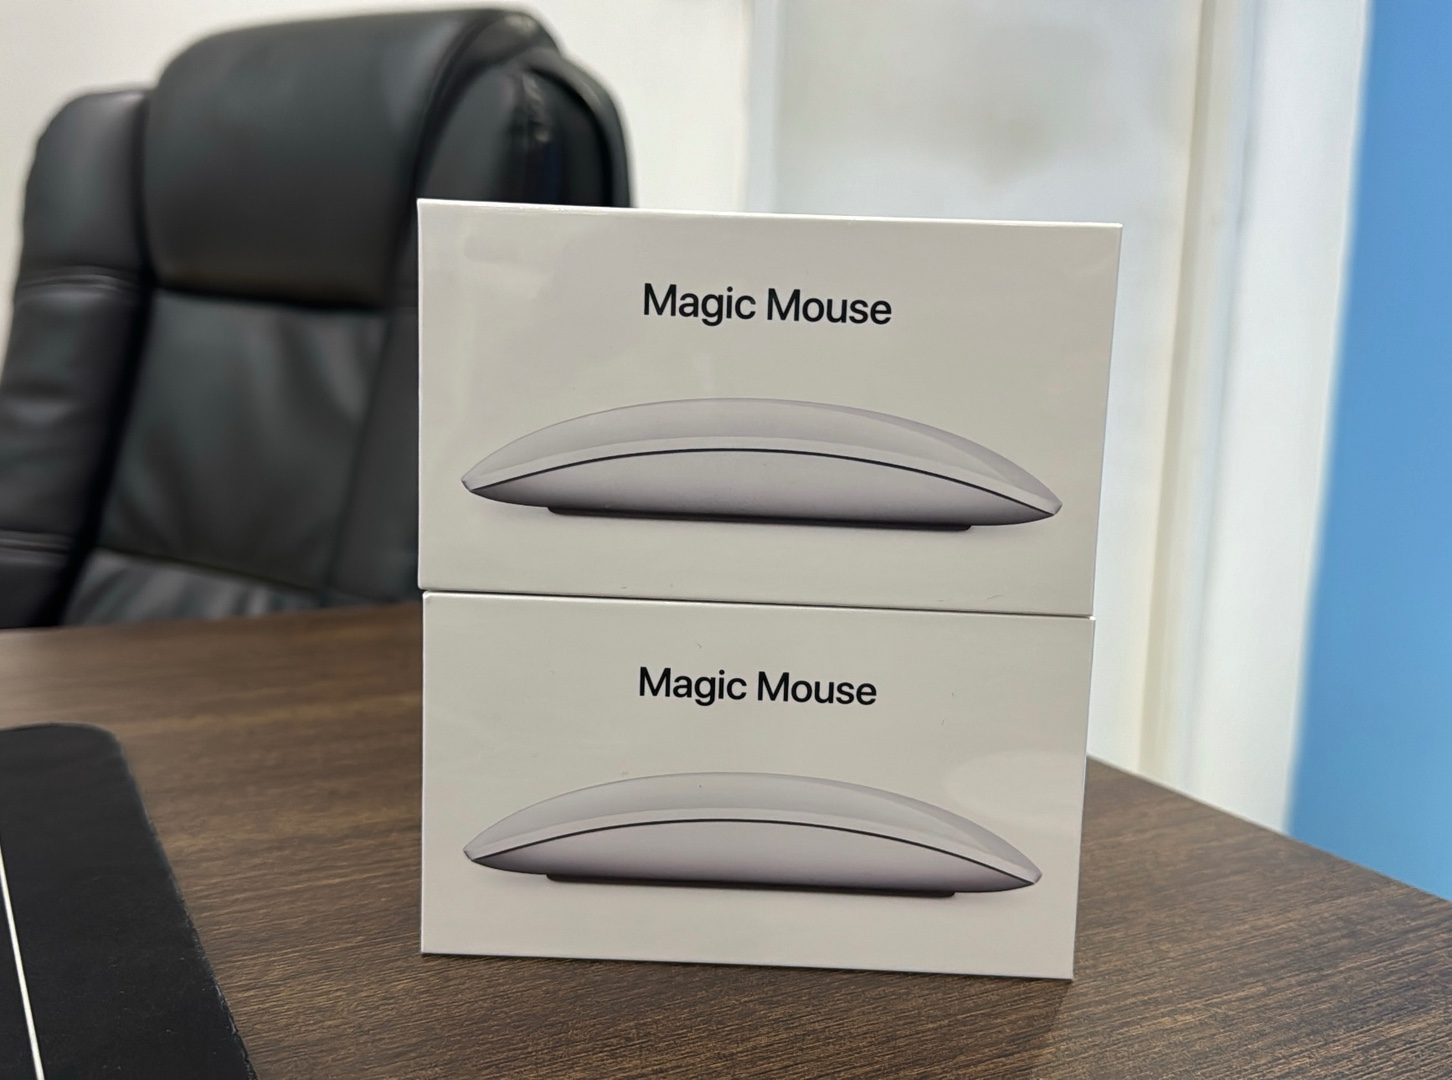 accesorios para electronica - Magic Mouse (2da Gen) Nuevos Sellados by Apple, Garantía, RD$ 6,300 NEG 0